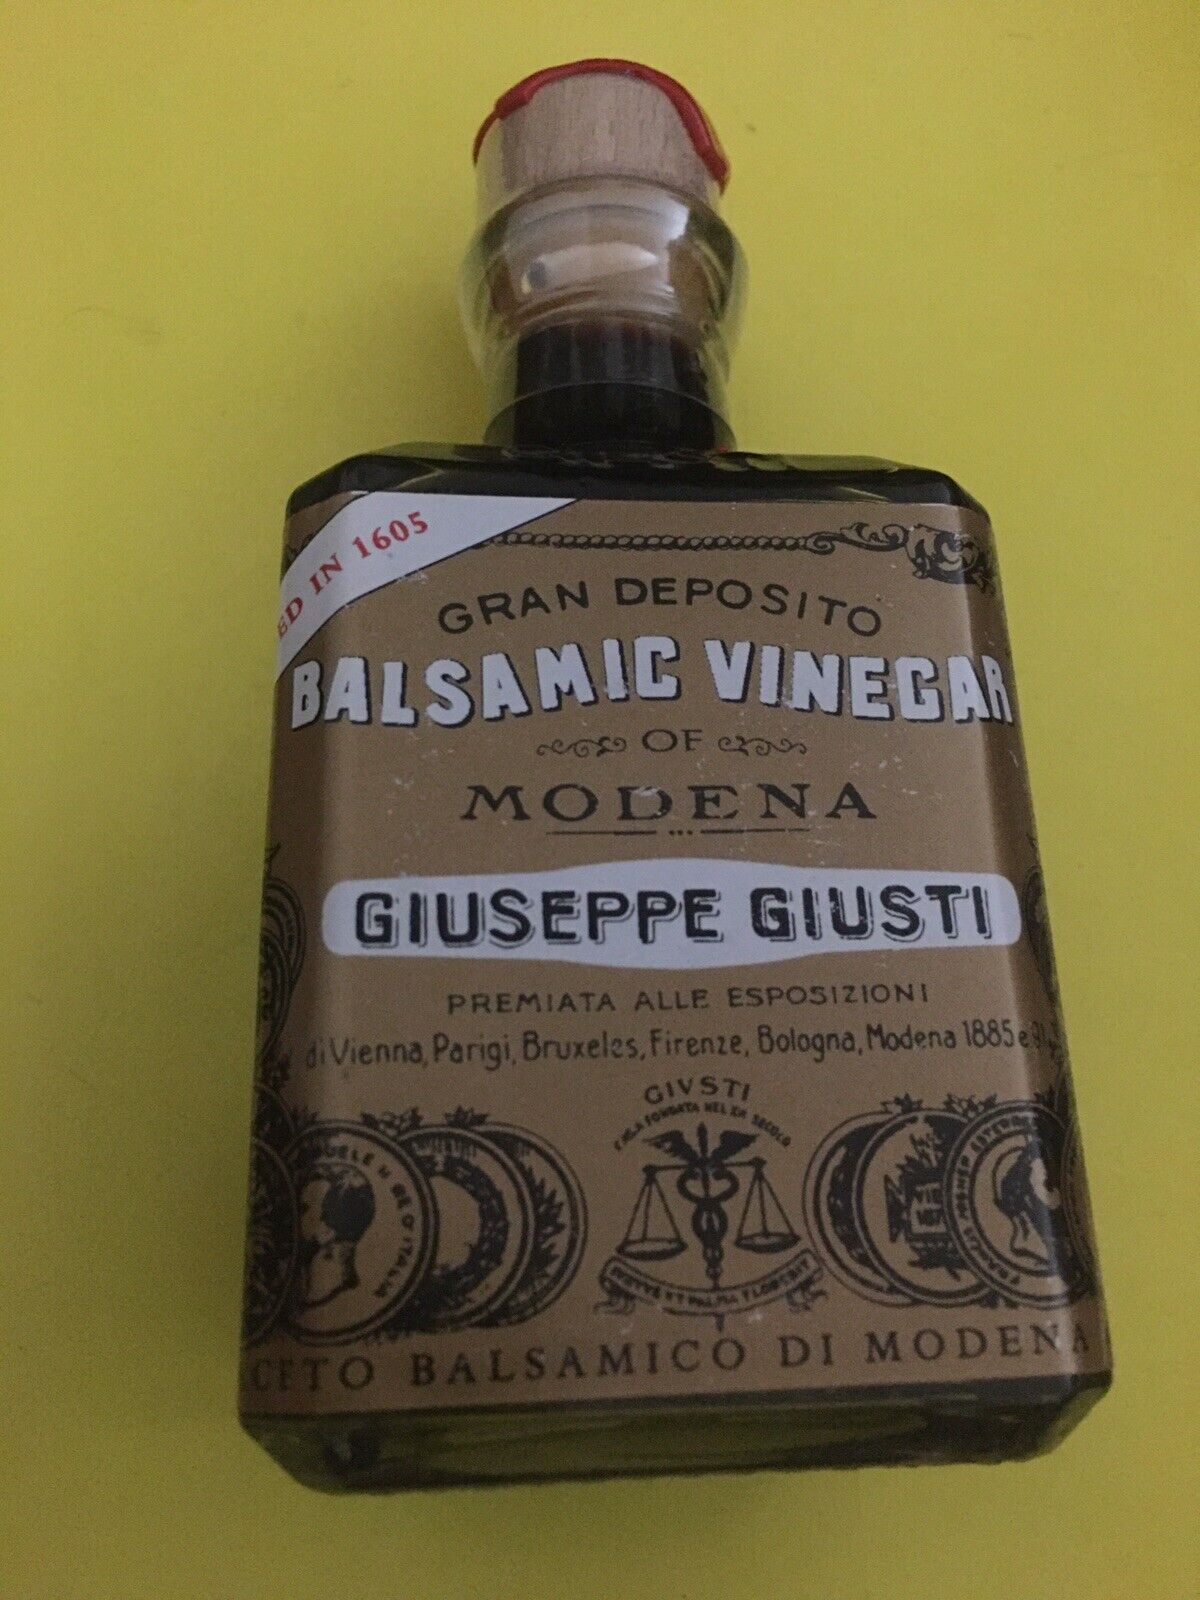 Giuseppe Giusti Balsamic Vinegar Of Modena Igp 250ml New